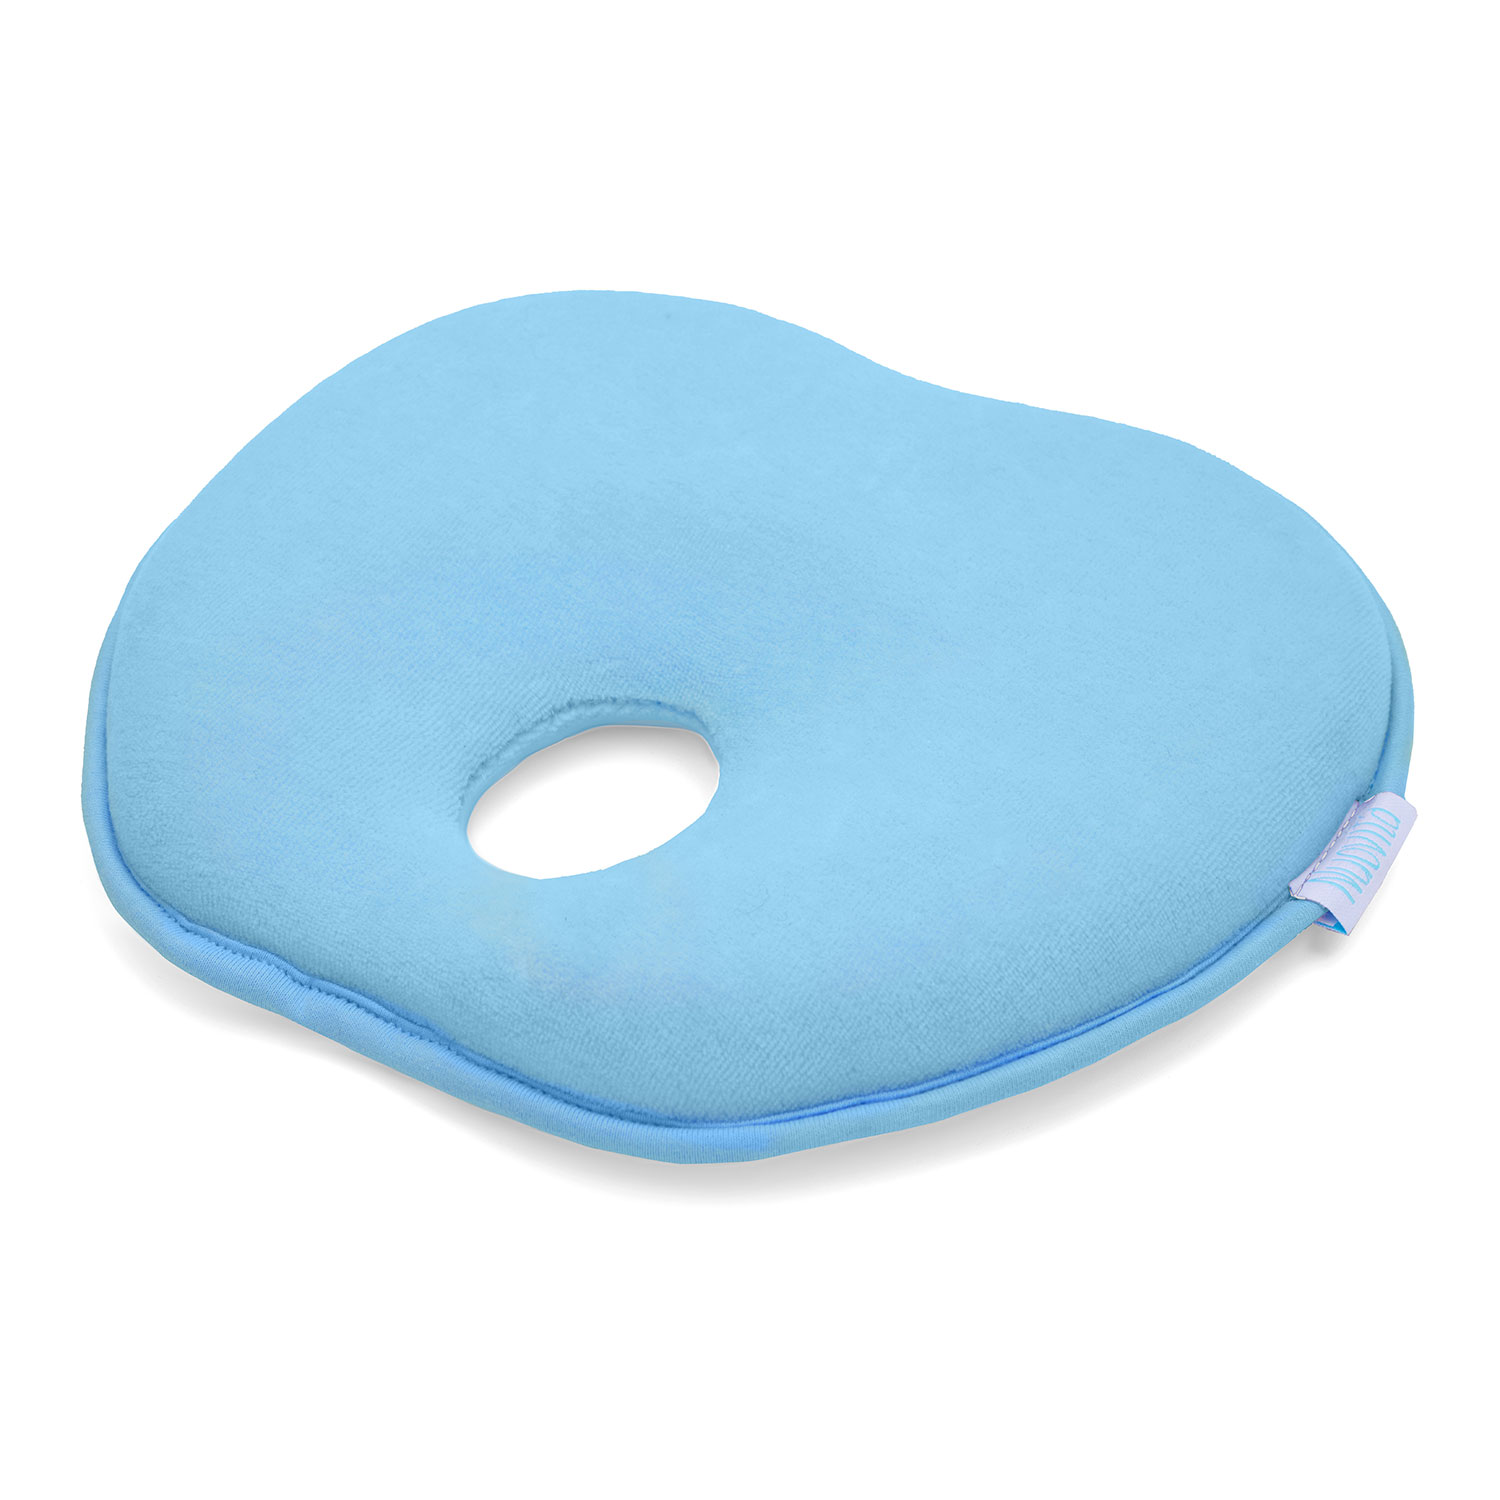 Подушка для новорожденного Nuovita NEONUTTI Mela Memoria Blu/Голубой подушка для новорожденного nuovita neonutti cuore memoria сrema кремовый